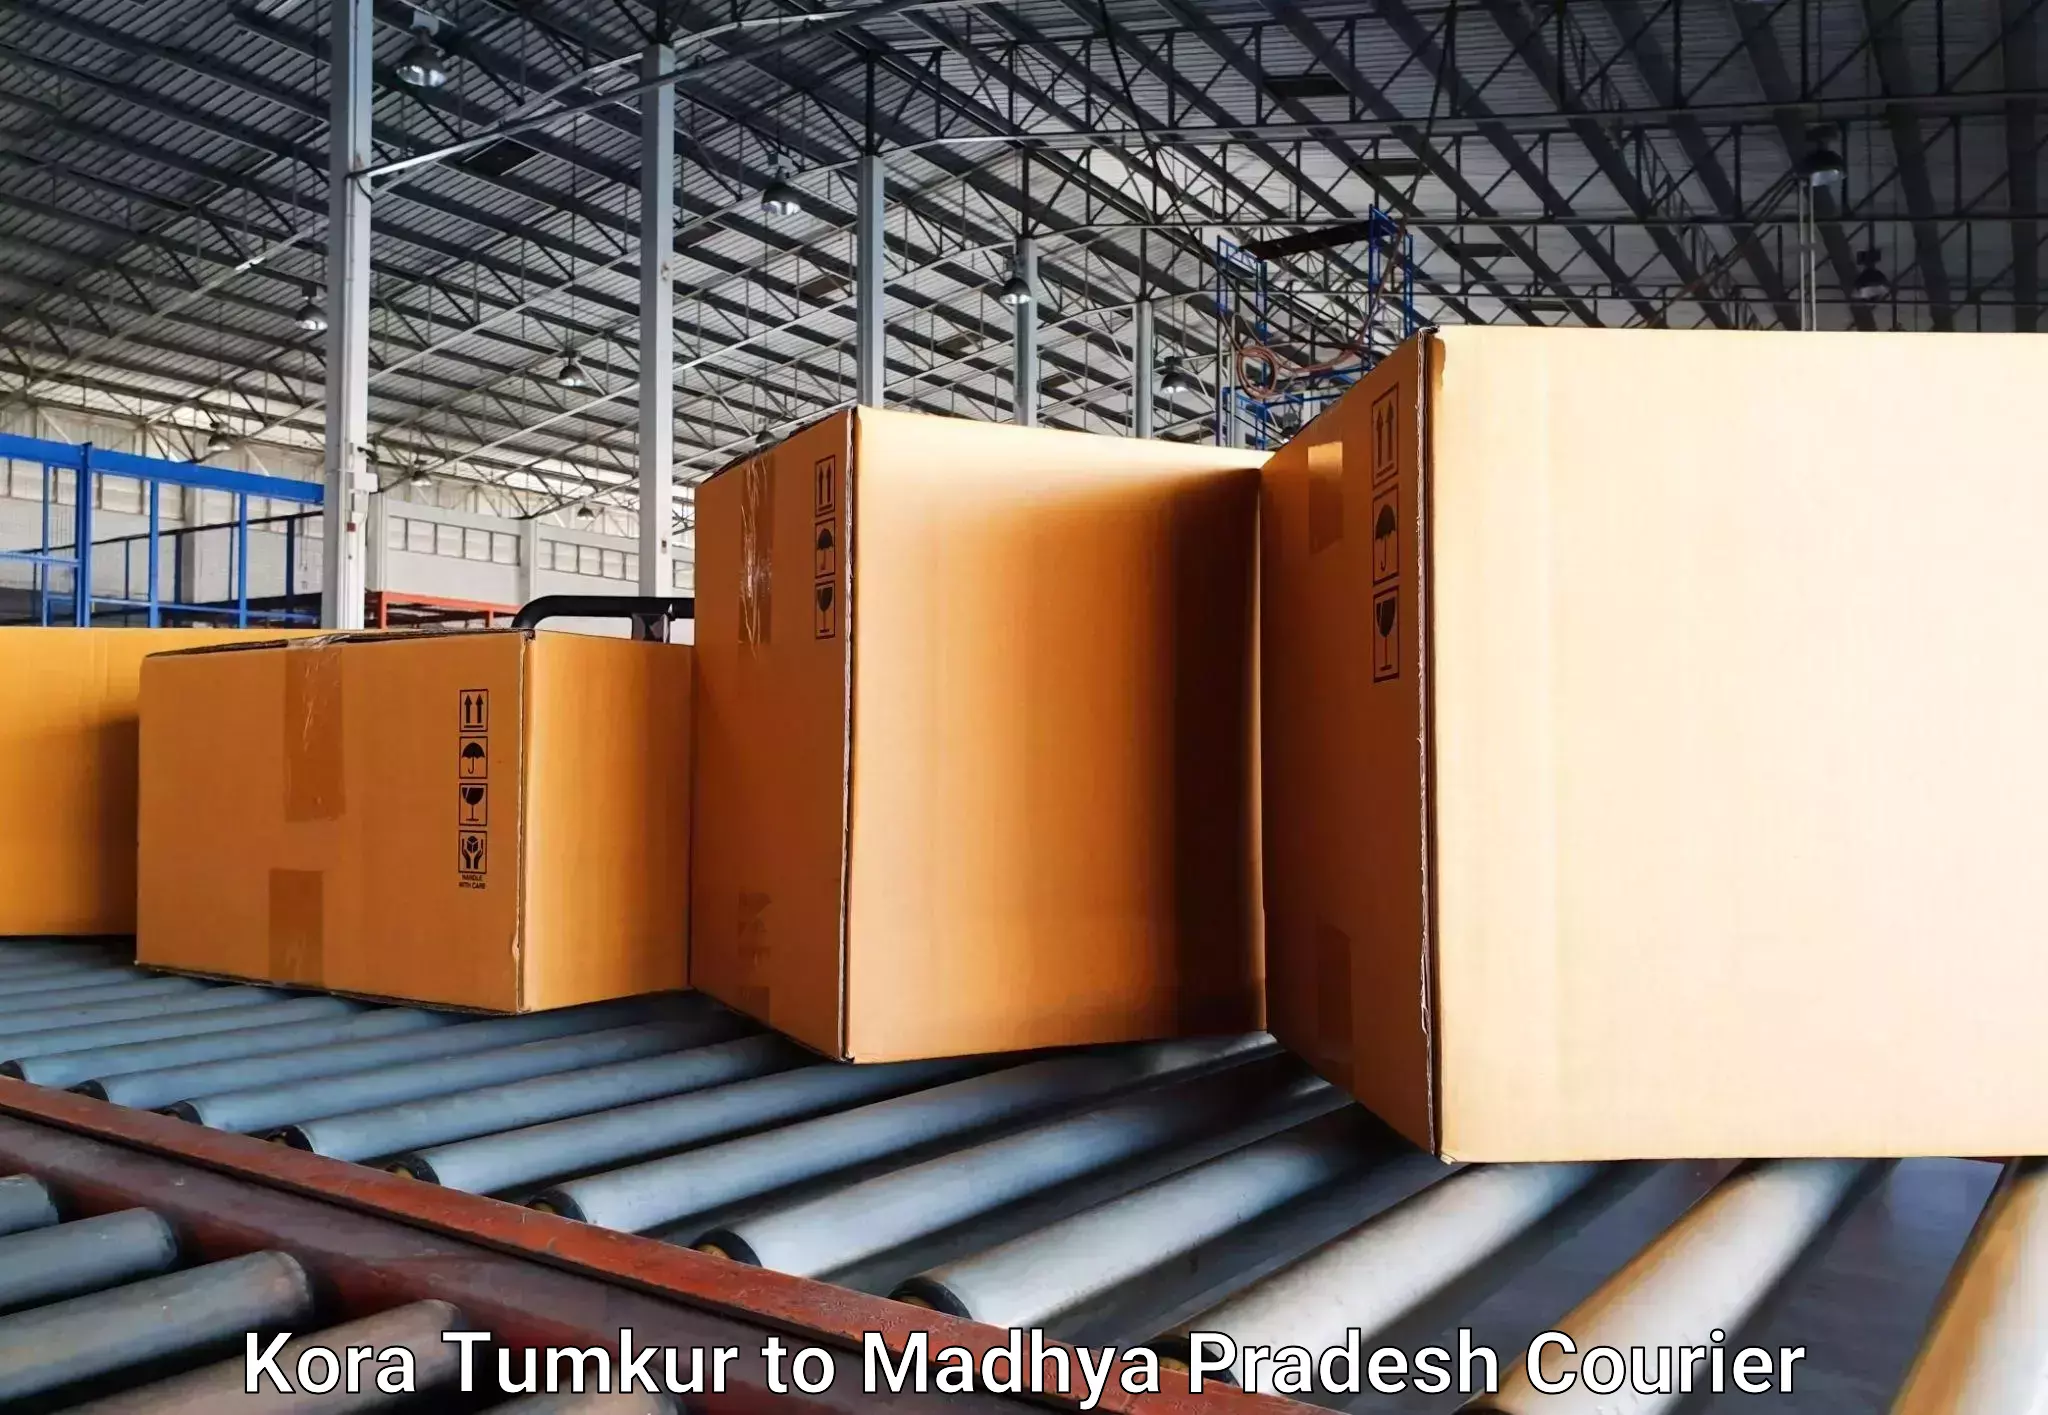 Luggage delivery app Kora Tumkur to Vidisha